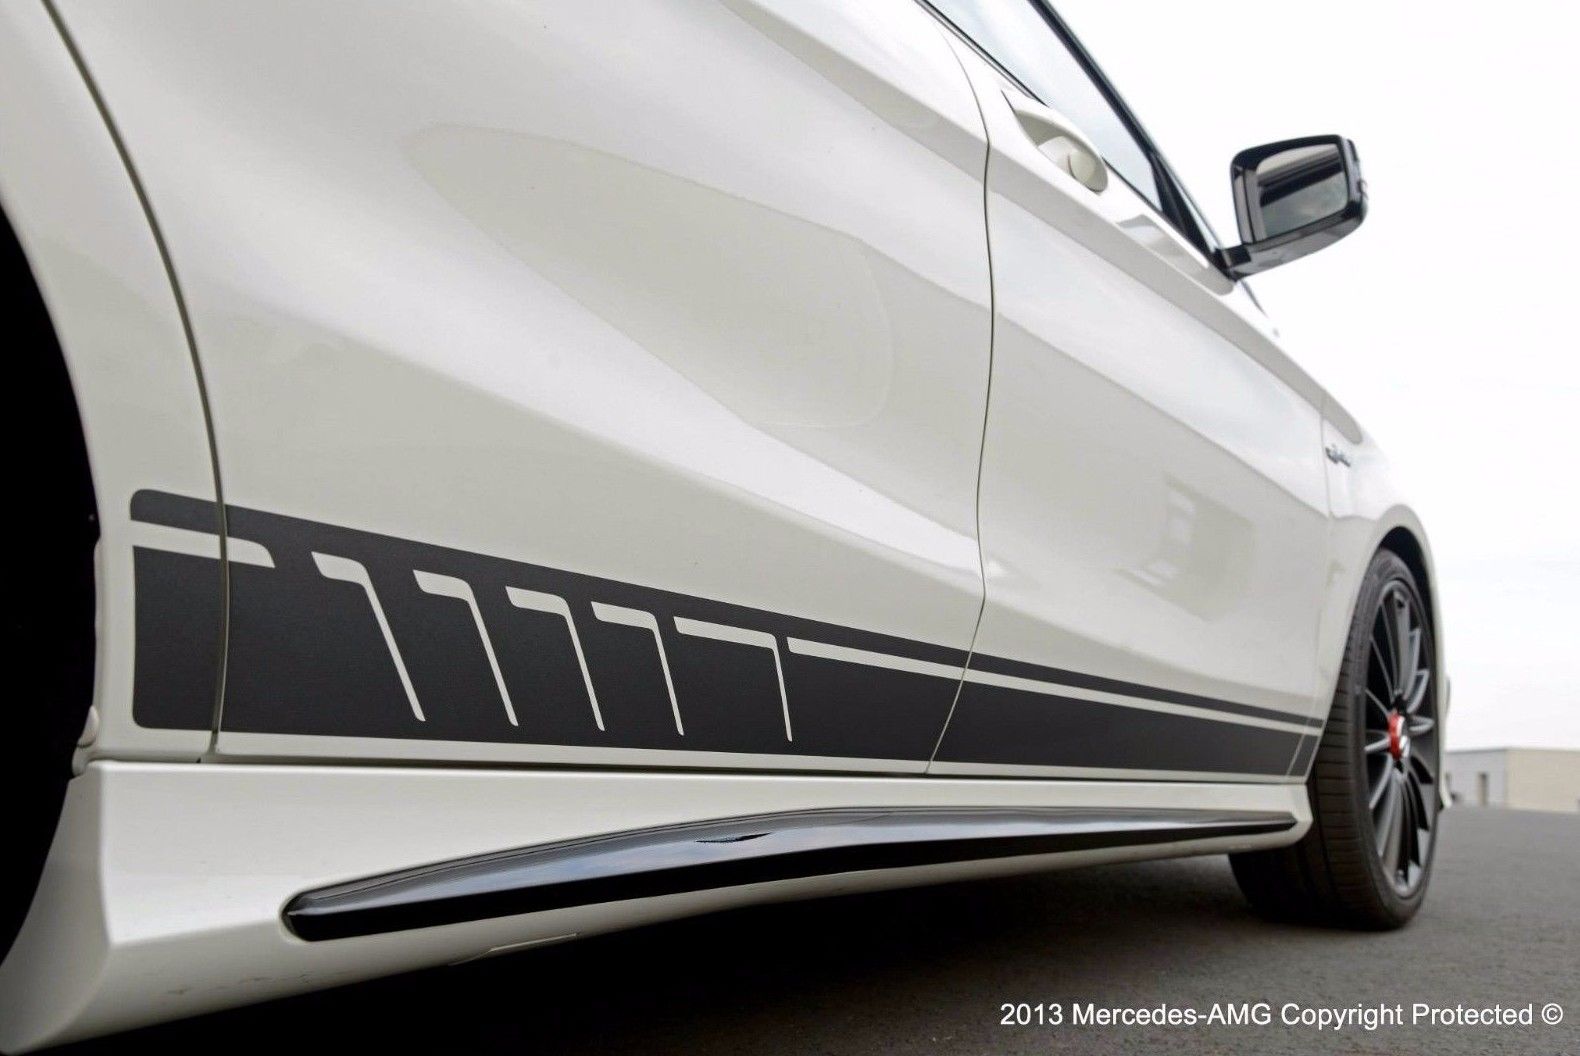 Adesivo decalcomania in vinile Style Stripes per Mercedes Benz CLA AMG nero
